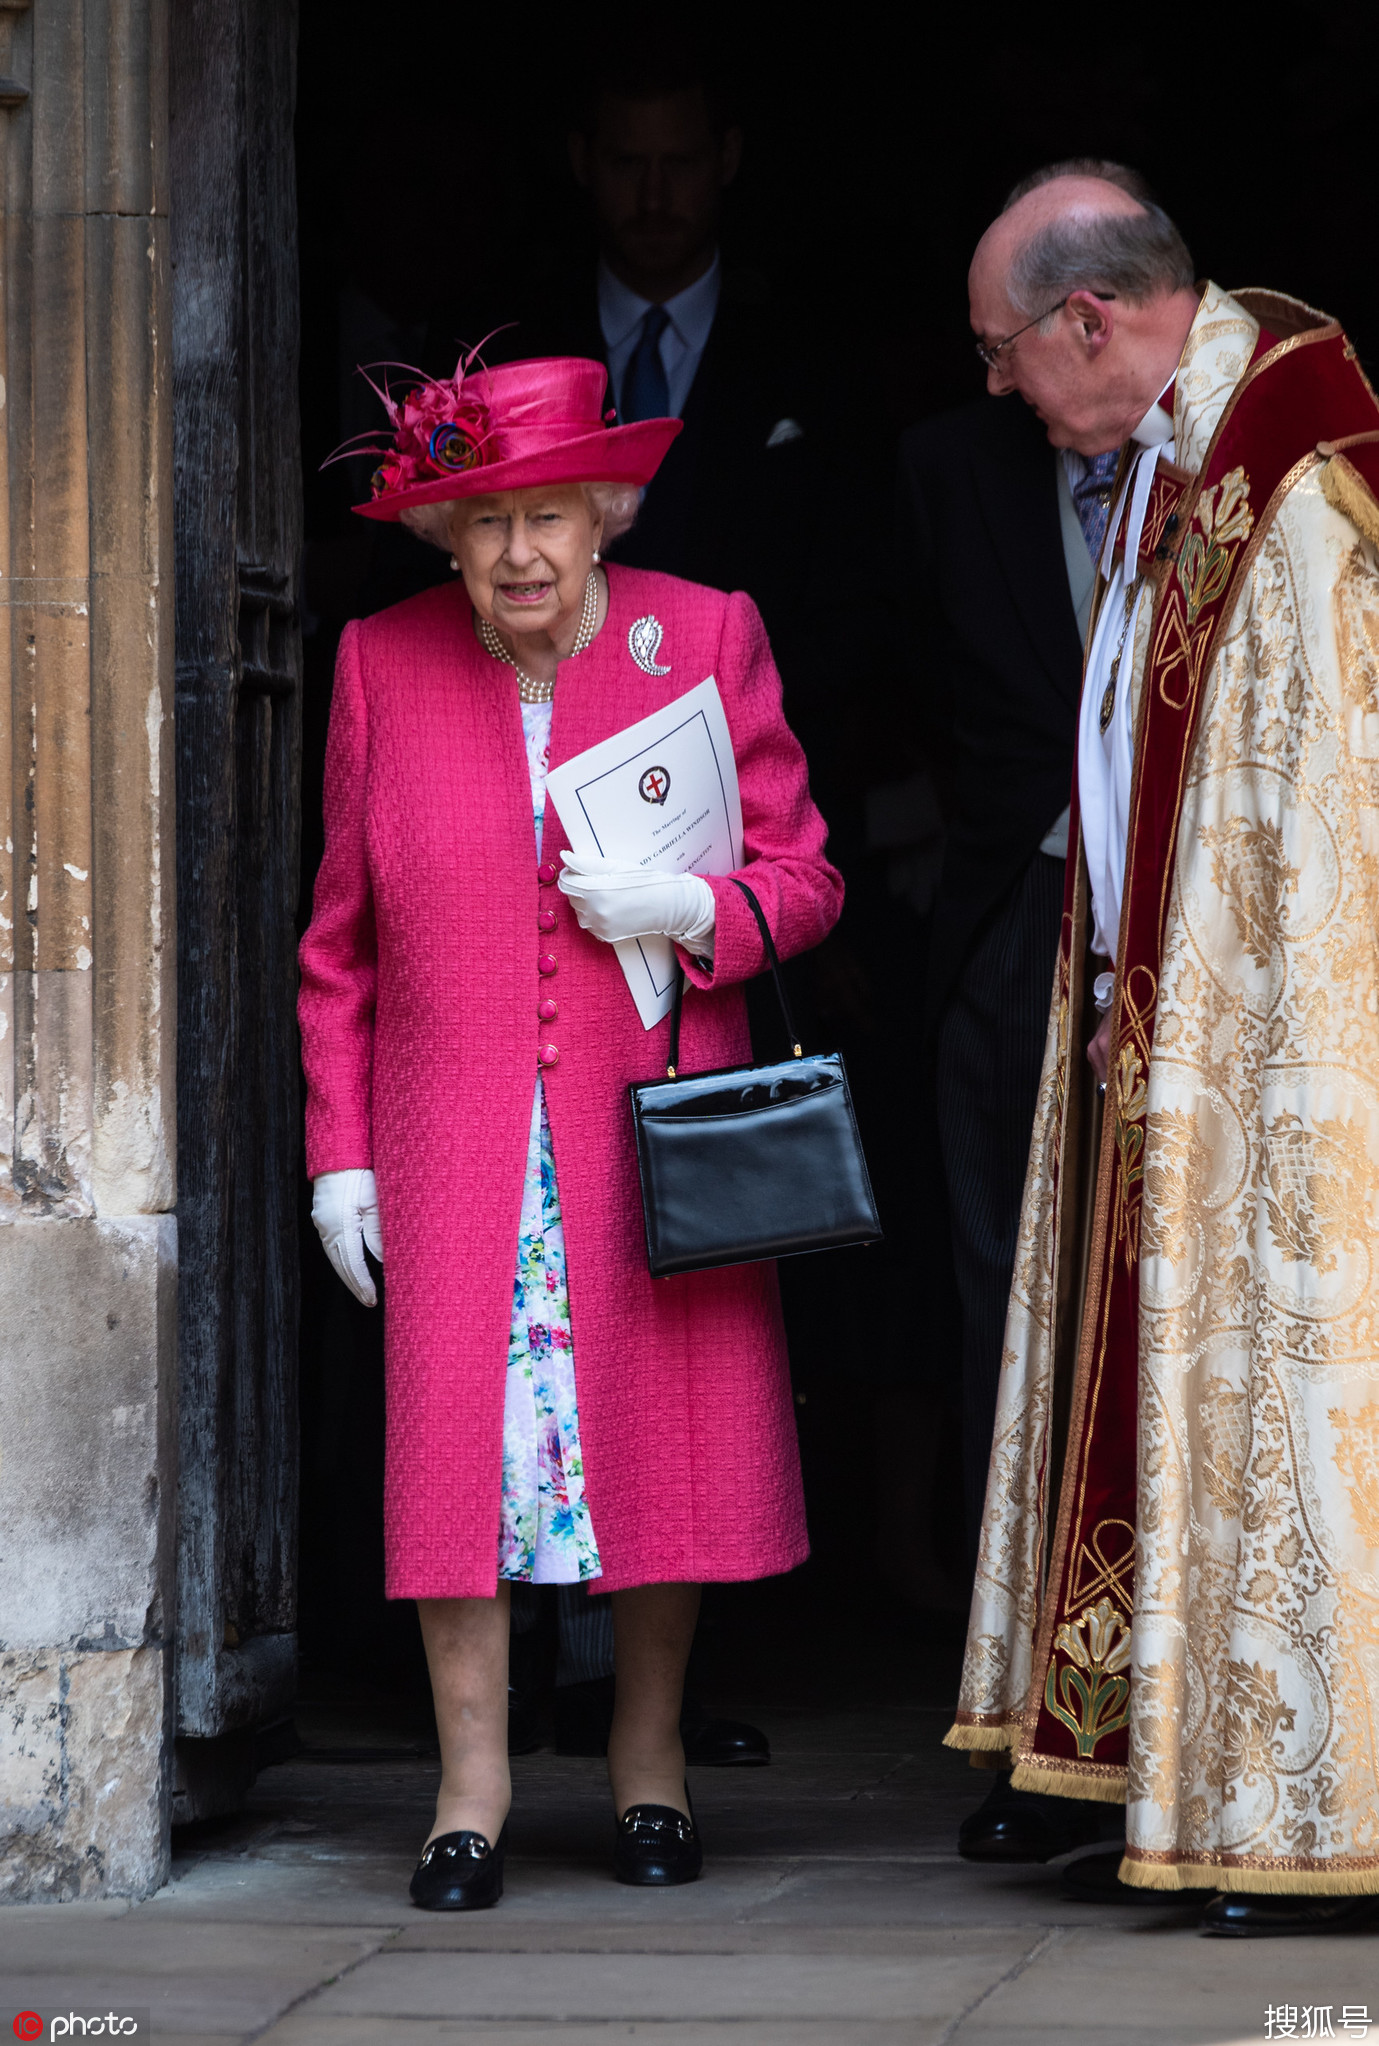 英国女王出席侄女婚礼 桃红色套装比新娘更吸睛